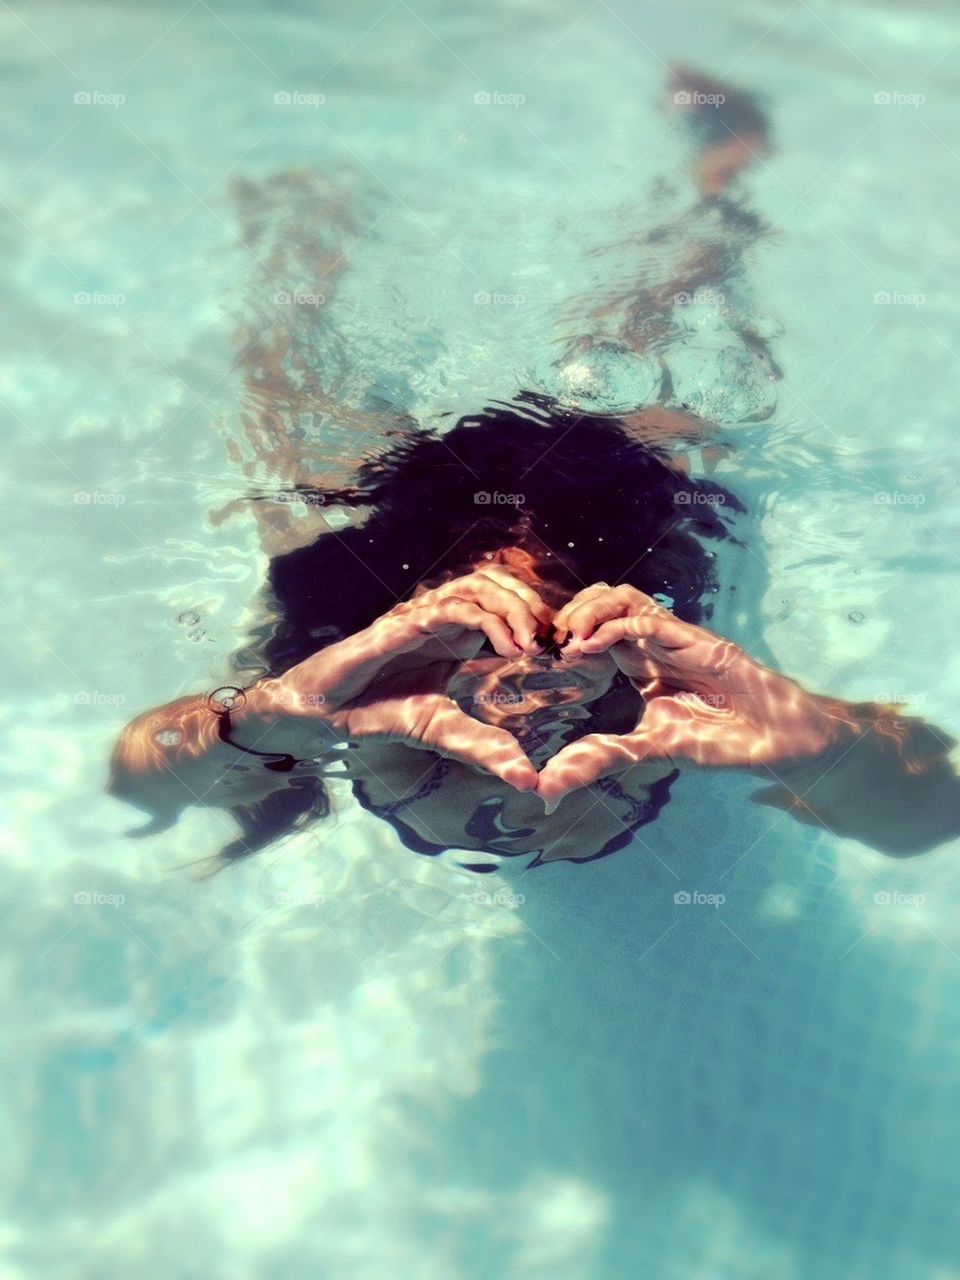 Swimming heart